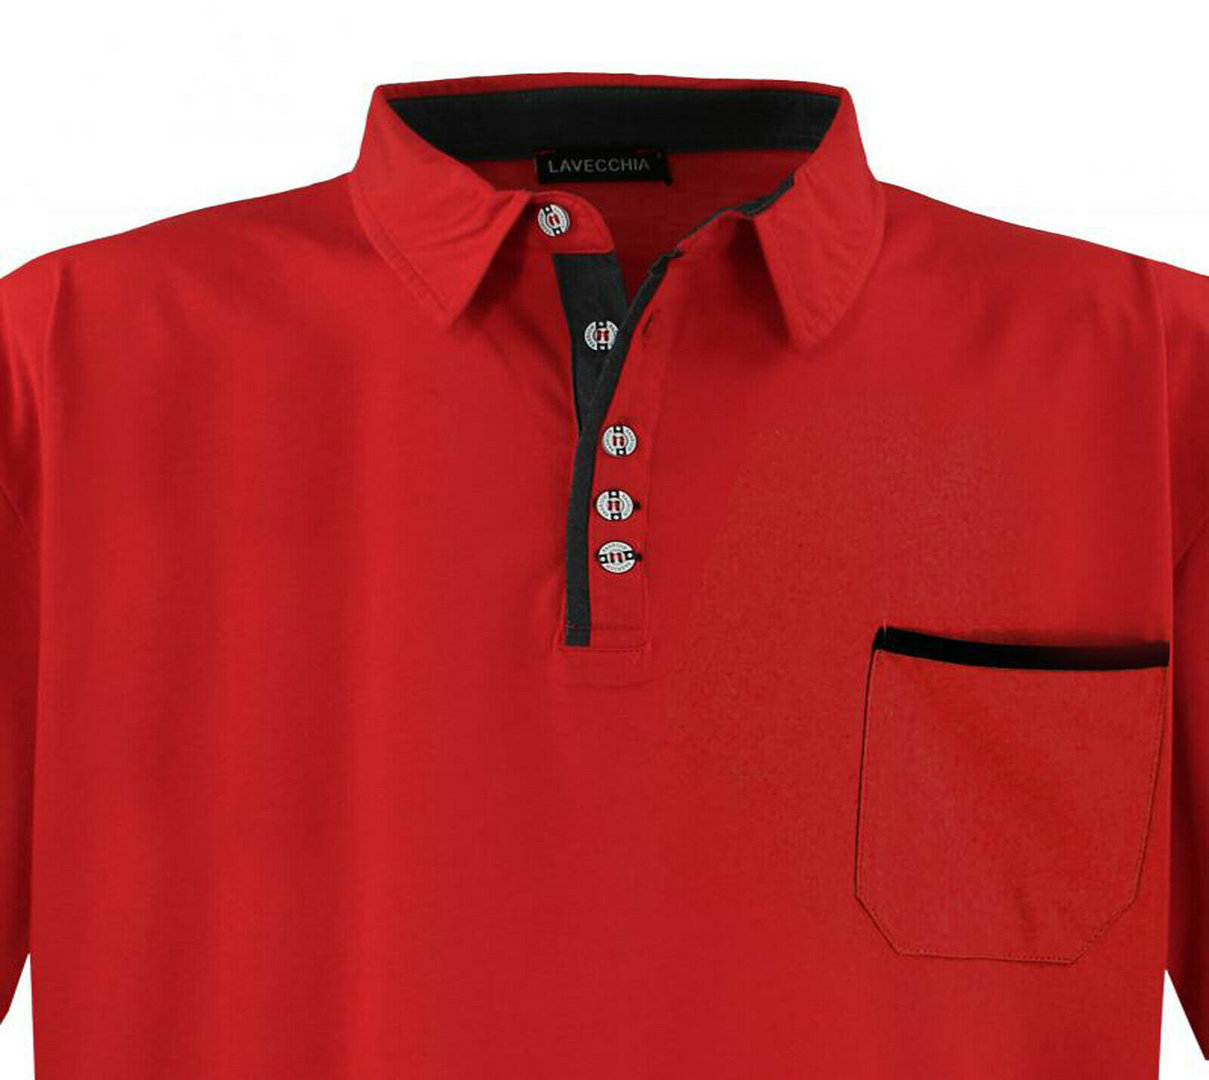 3XL 4XL 5XL 6XL 7XL 8XL NEU Lavecchia Kurzarm Polohemd Poloshirt T-Shirt Rot 